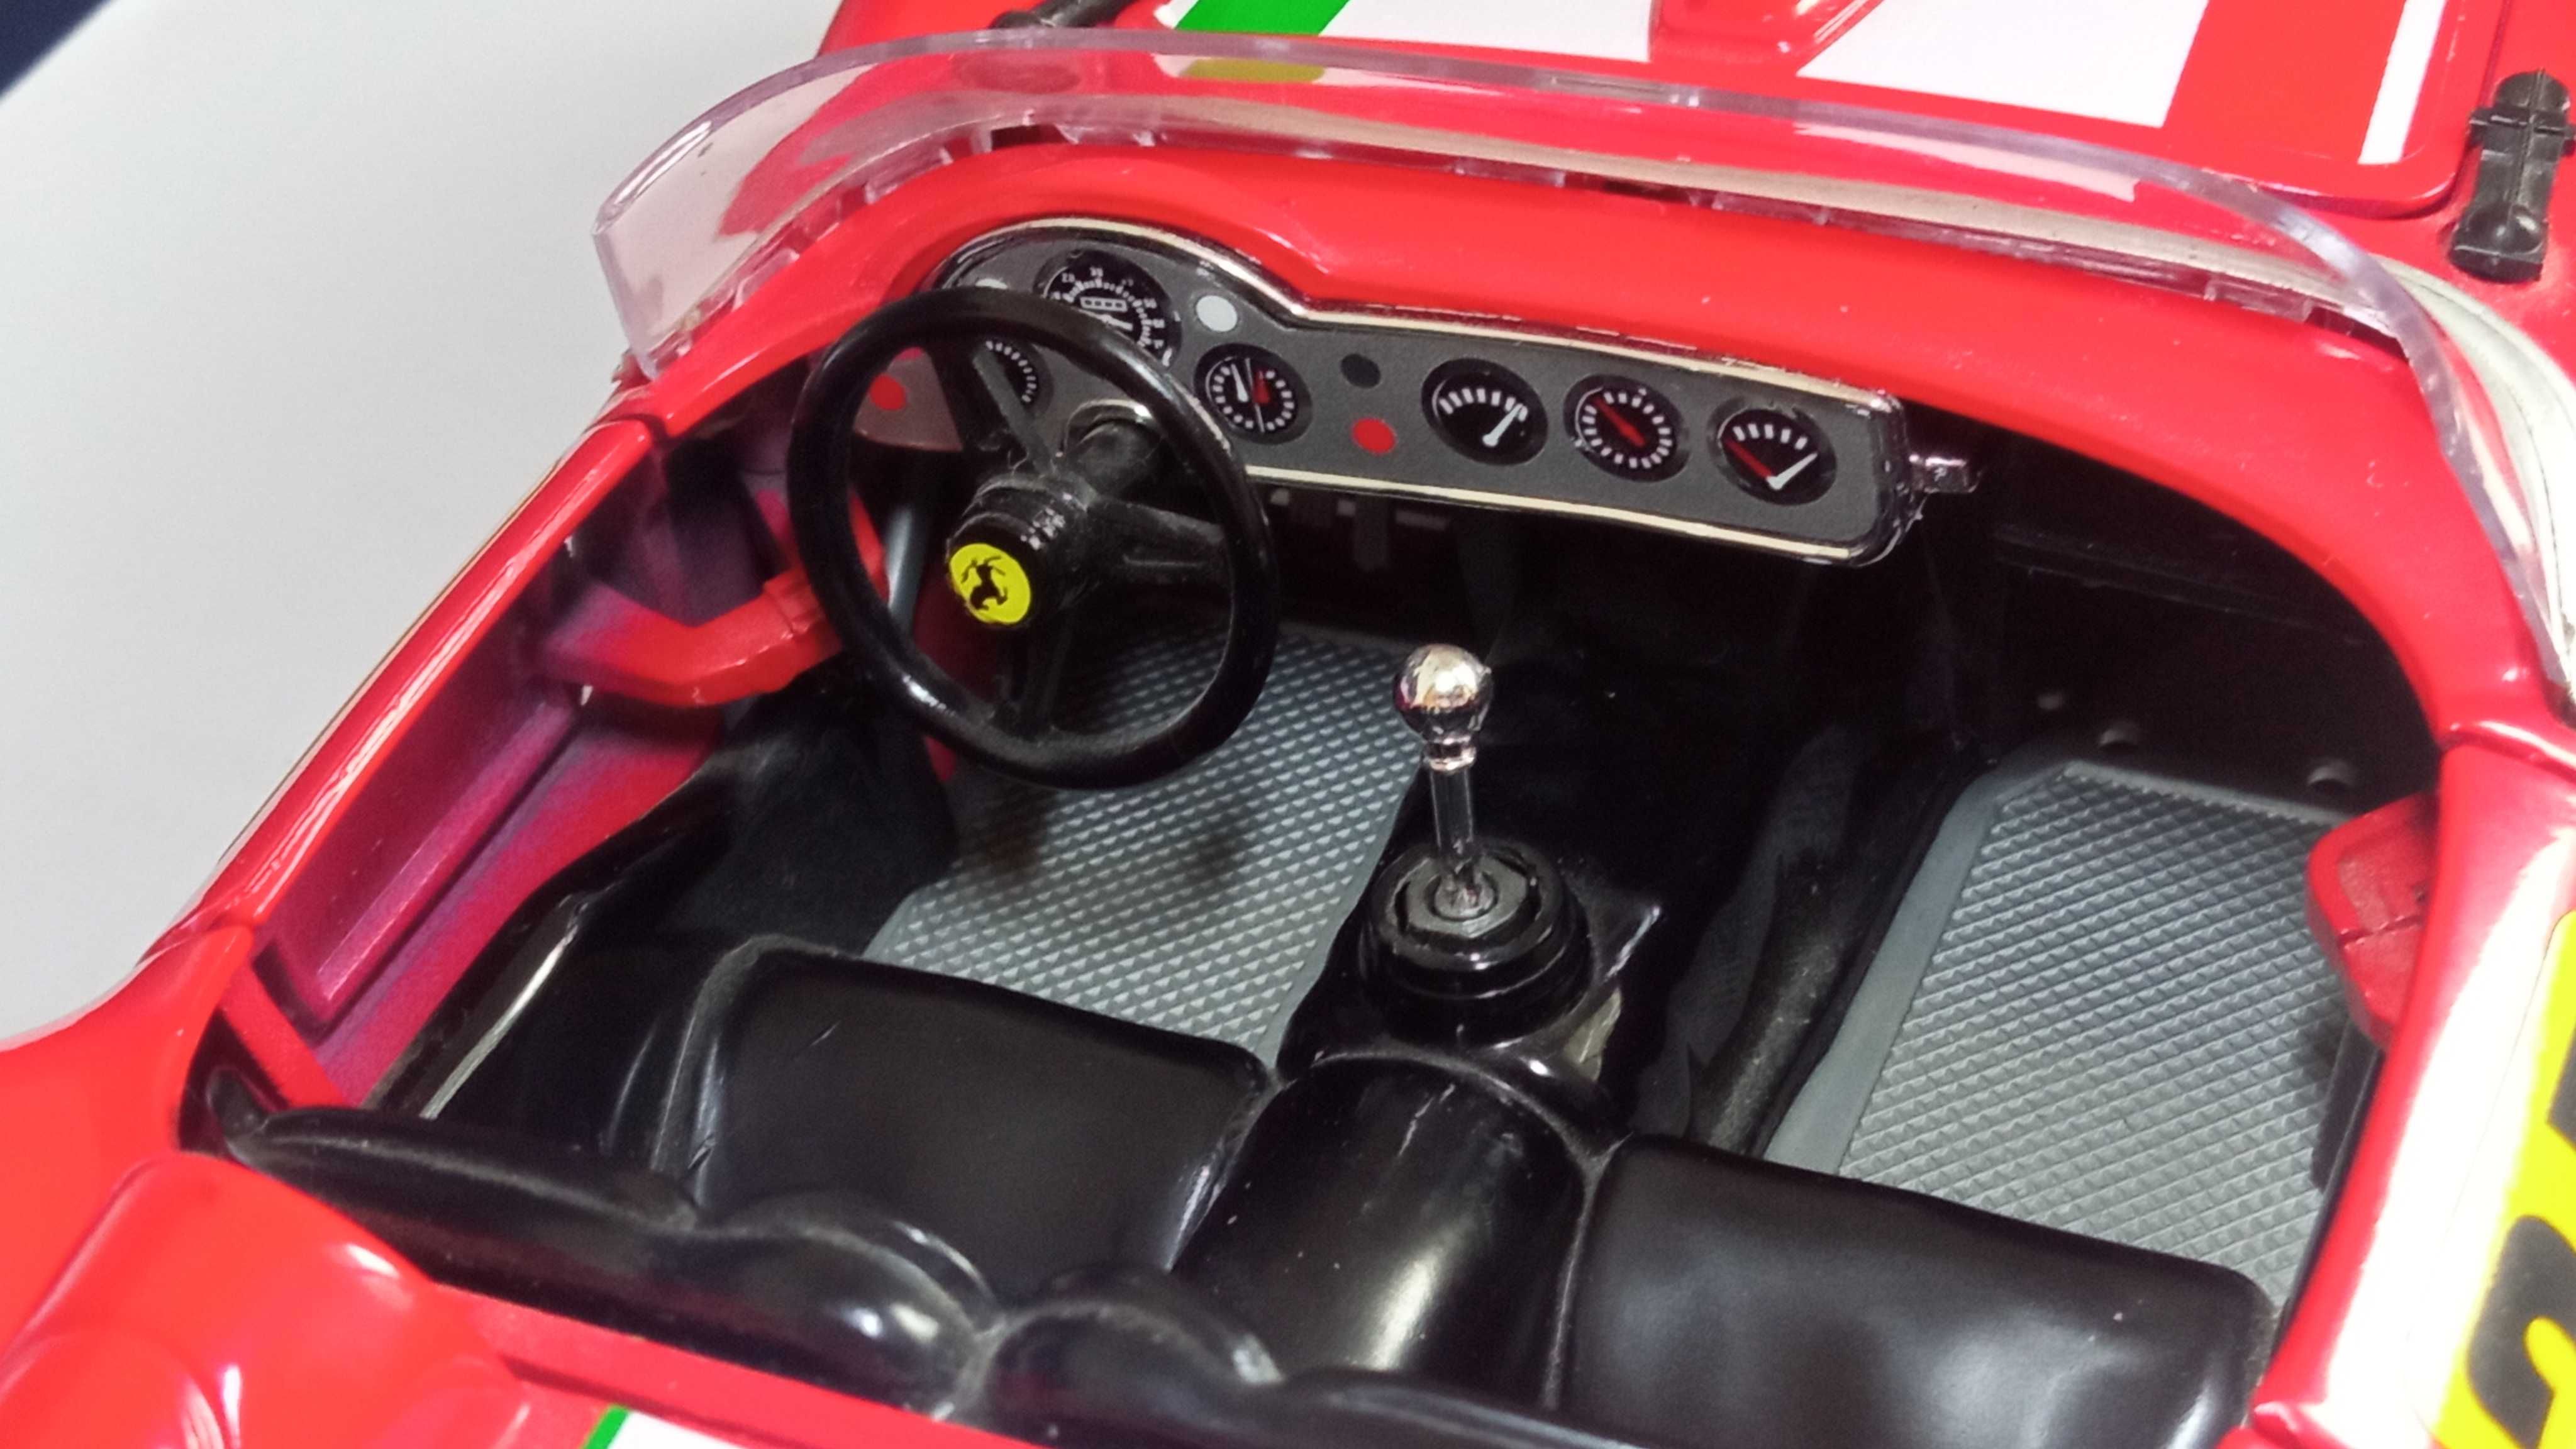 Ferrari 250 Testa Rossa Bburago 1:18